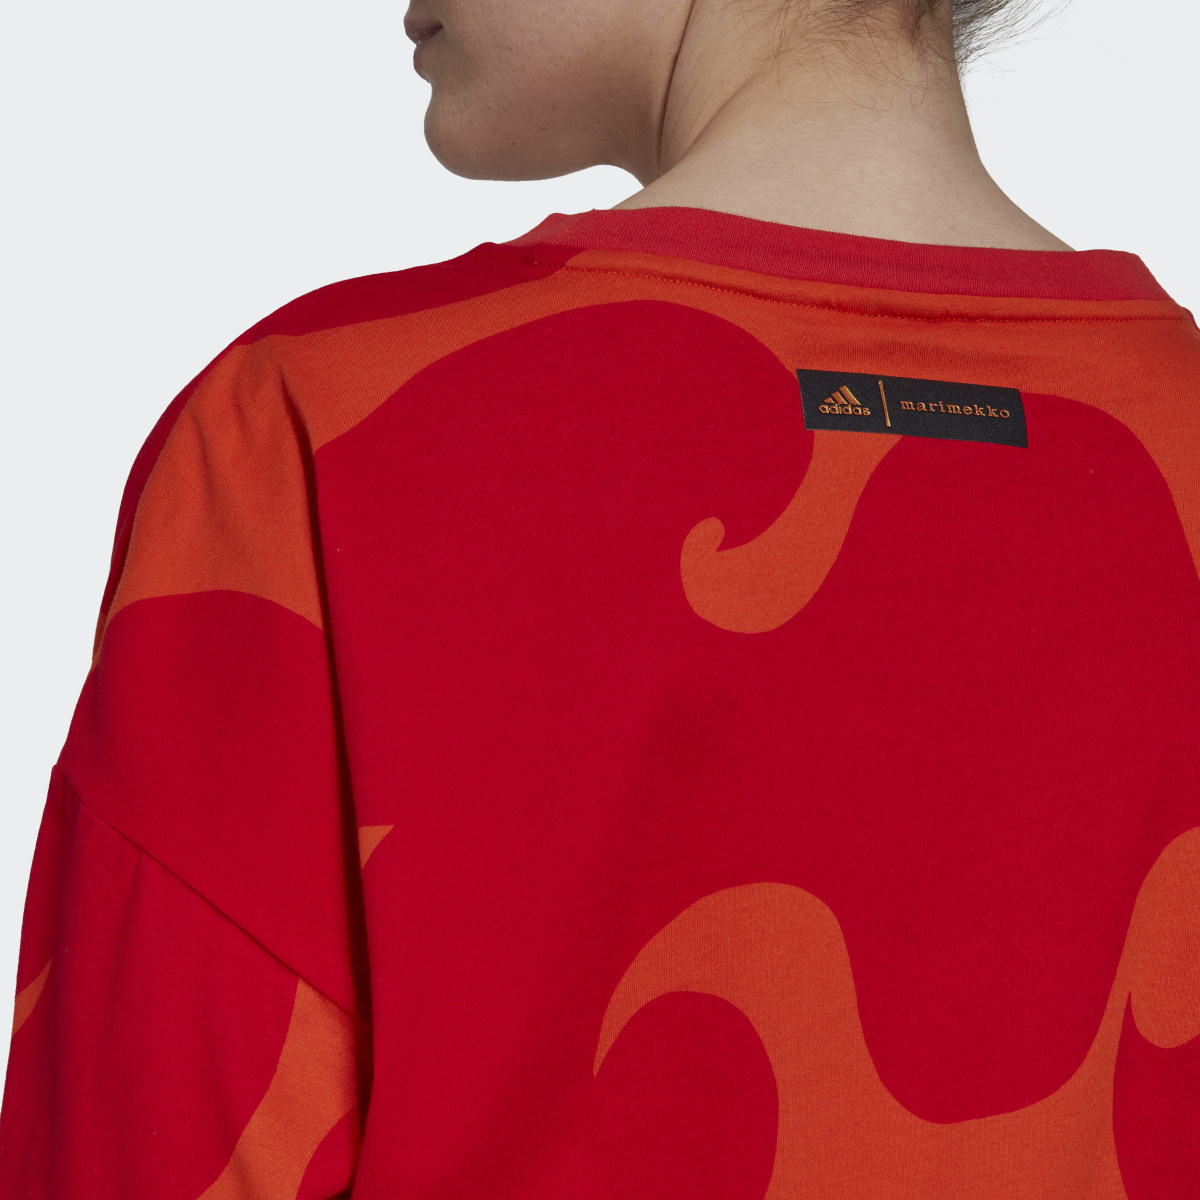 Adidas Marimekko T-Shirt. 6